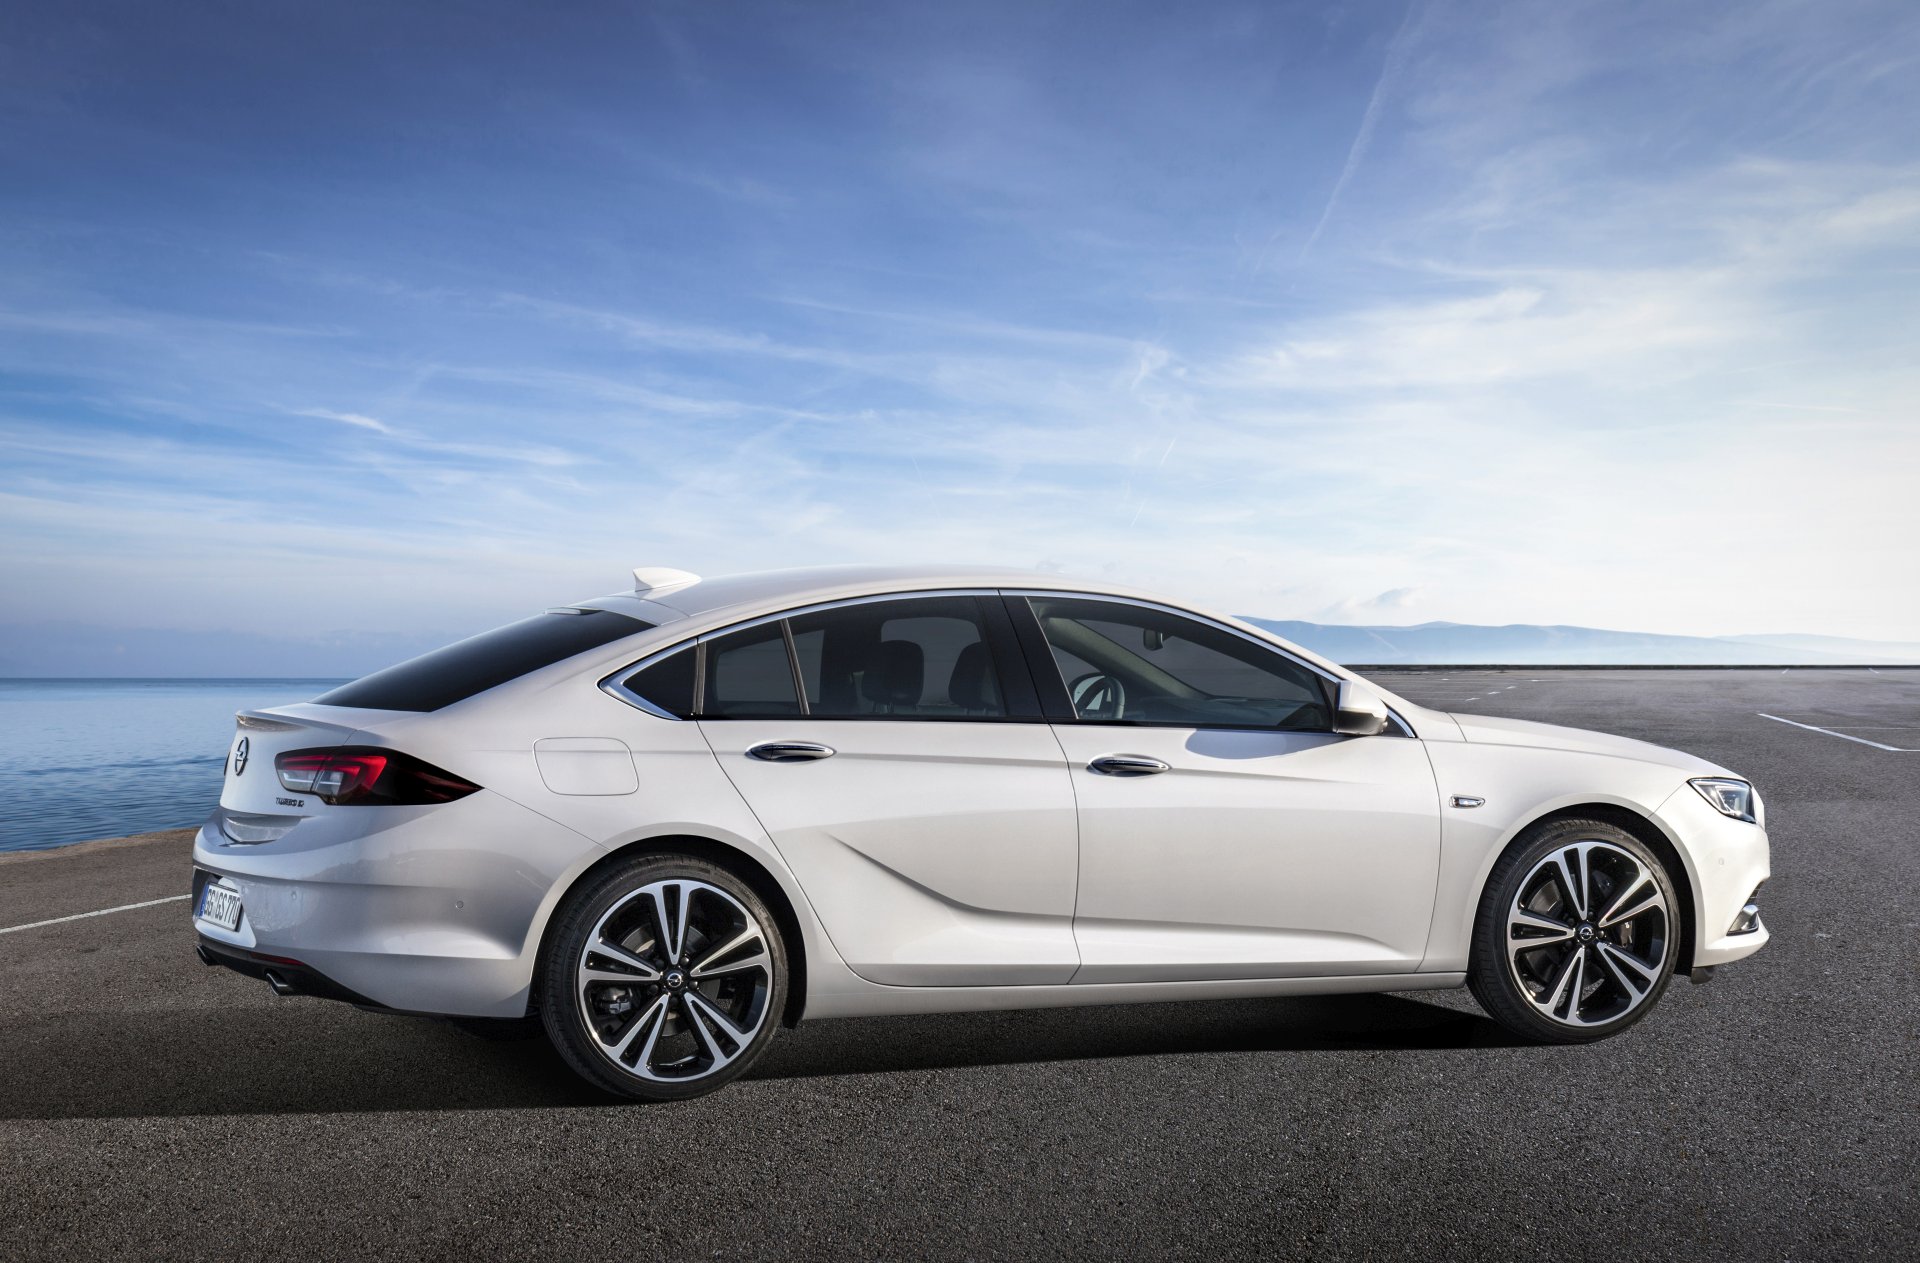 Das ist der neue Opel Insignia / UPDATE jetzt auch offiziell ALLES AUTO